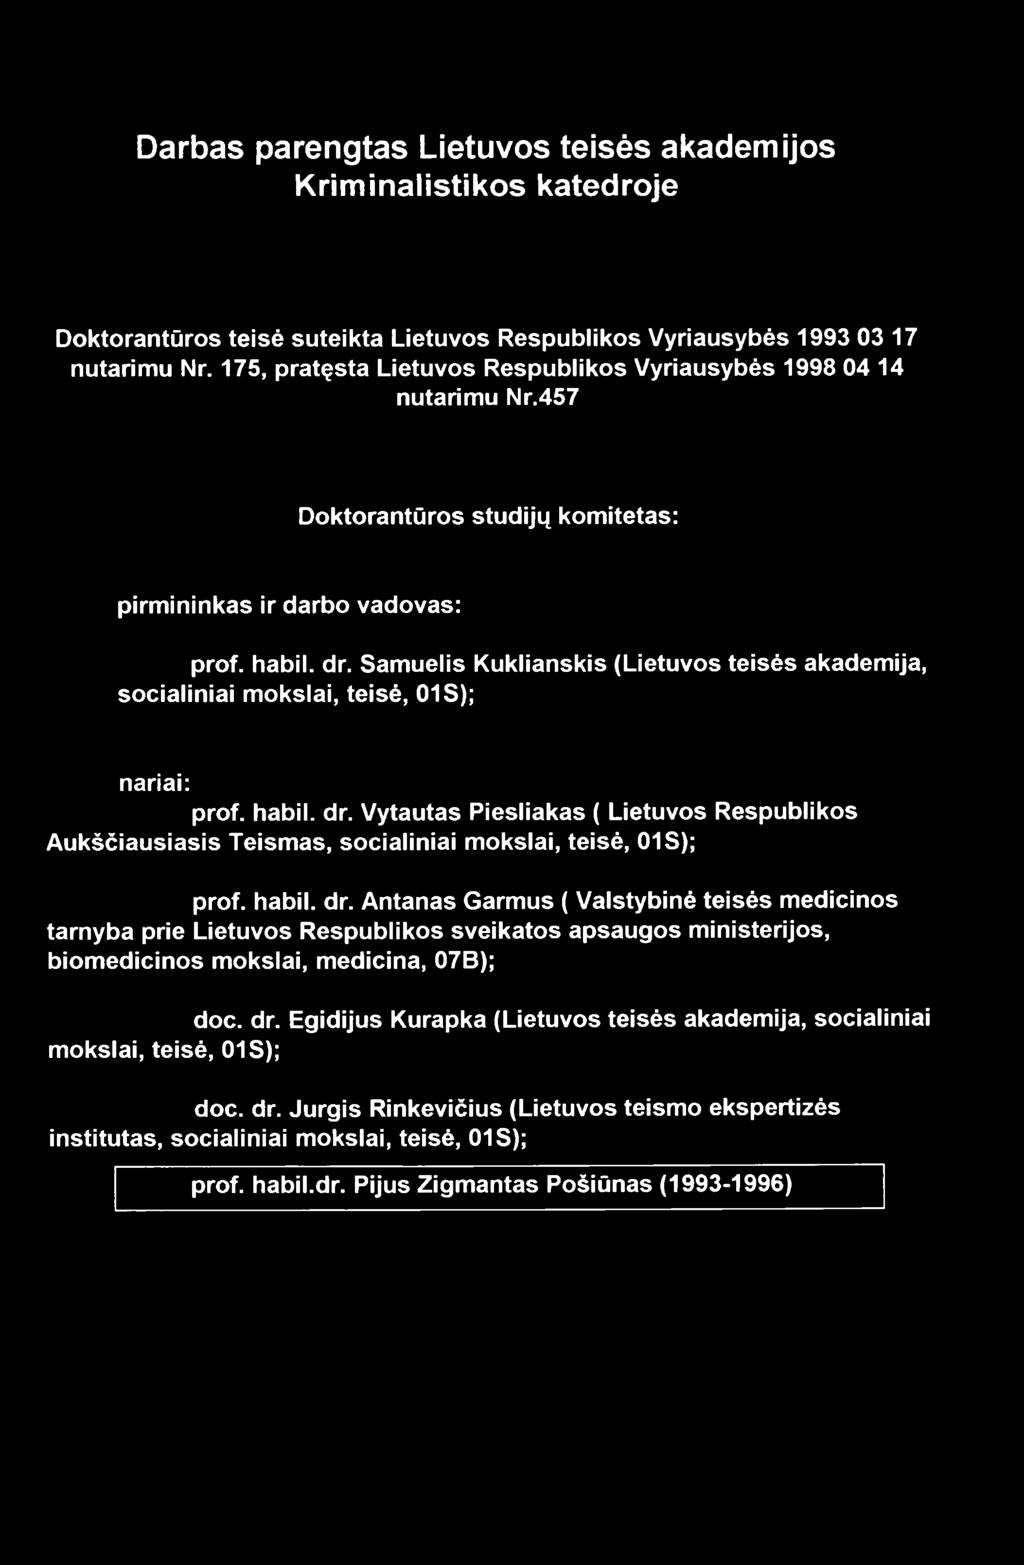 Samuelis Kuklianskis (Lietuvos teisės akademija, socialiniai mokslai, teisė, 01 S); nariai: prof. habil. dr.